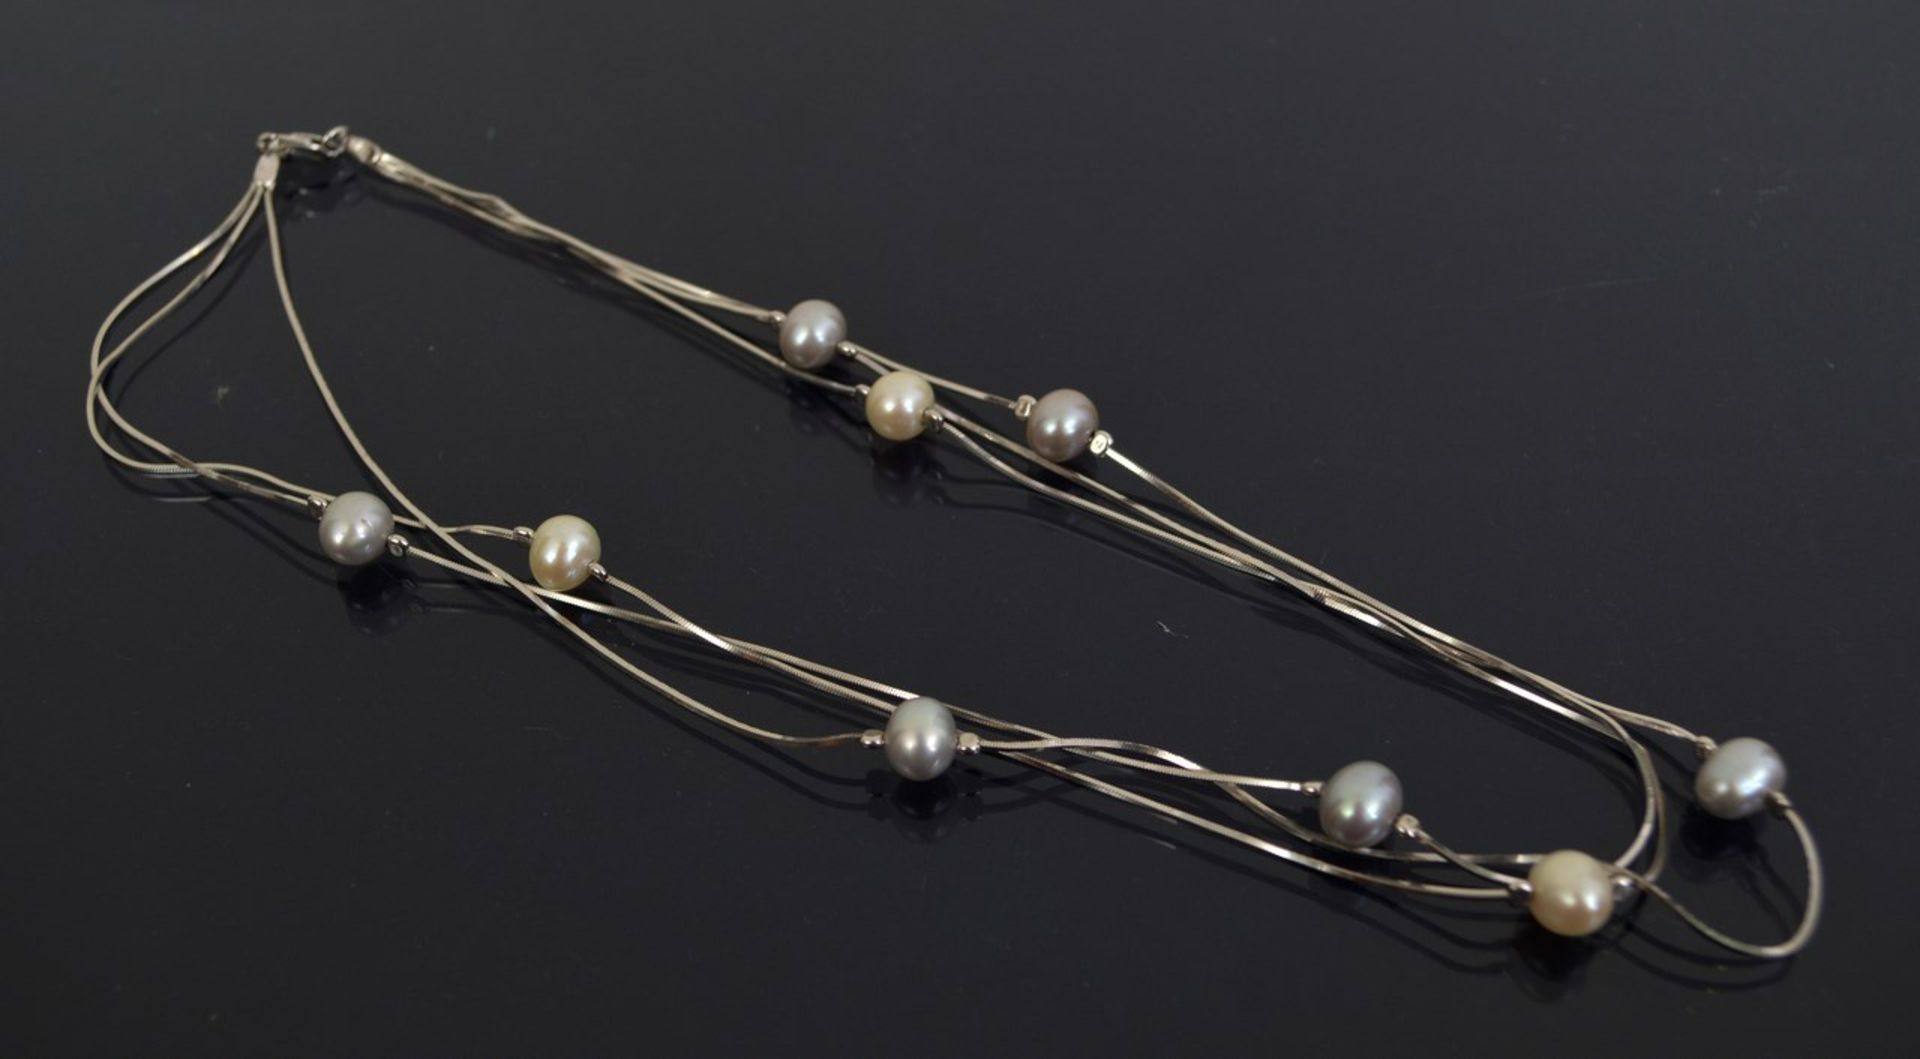 Halskette800er Silber, dreireihig, mit PerlenMindestpreis: 5 EUR